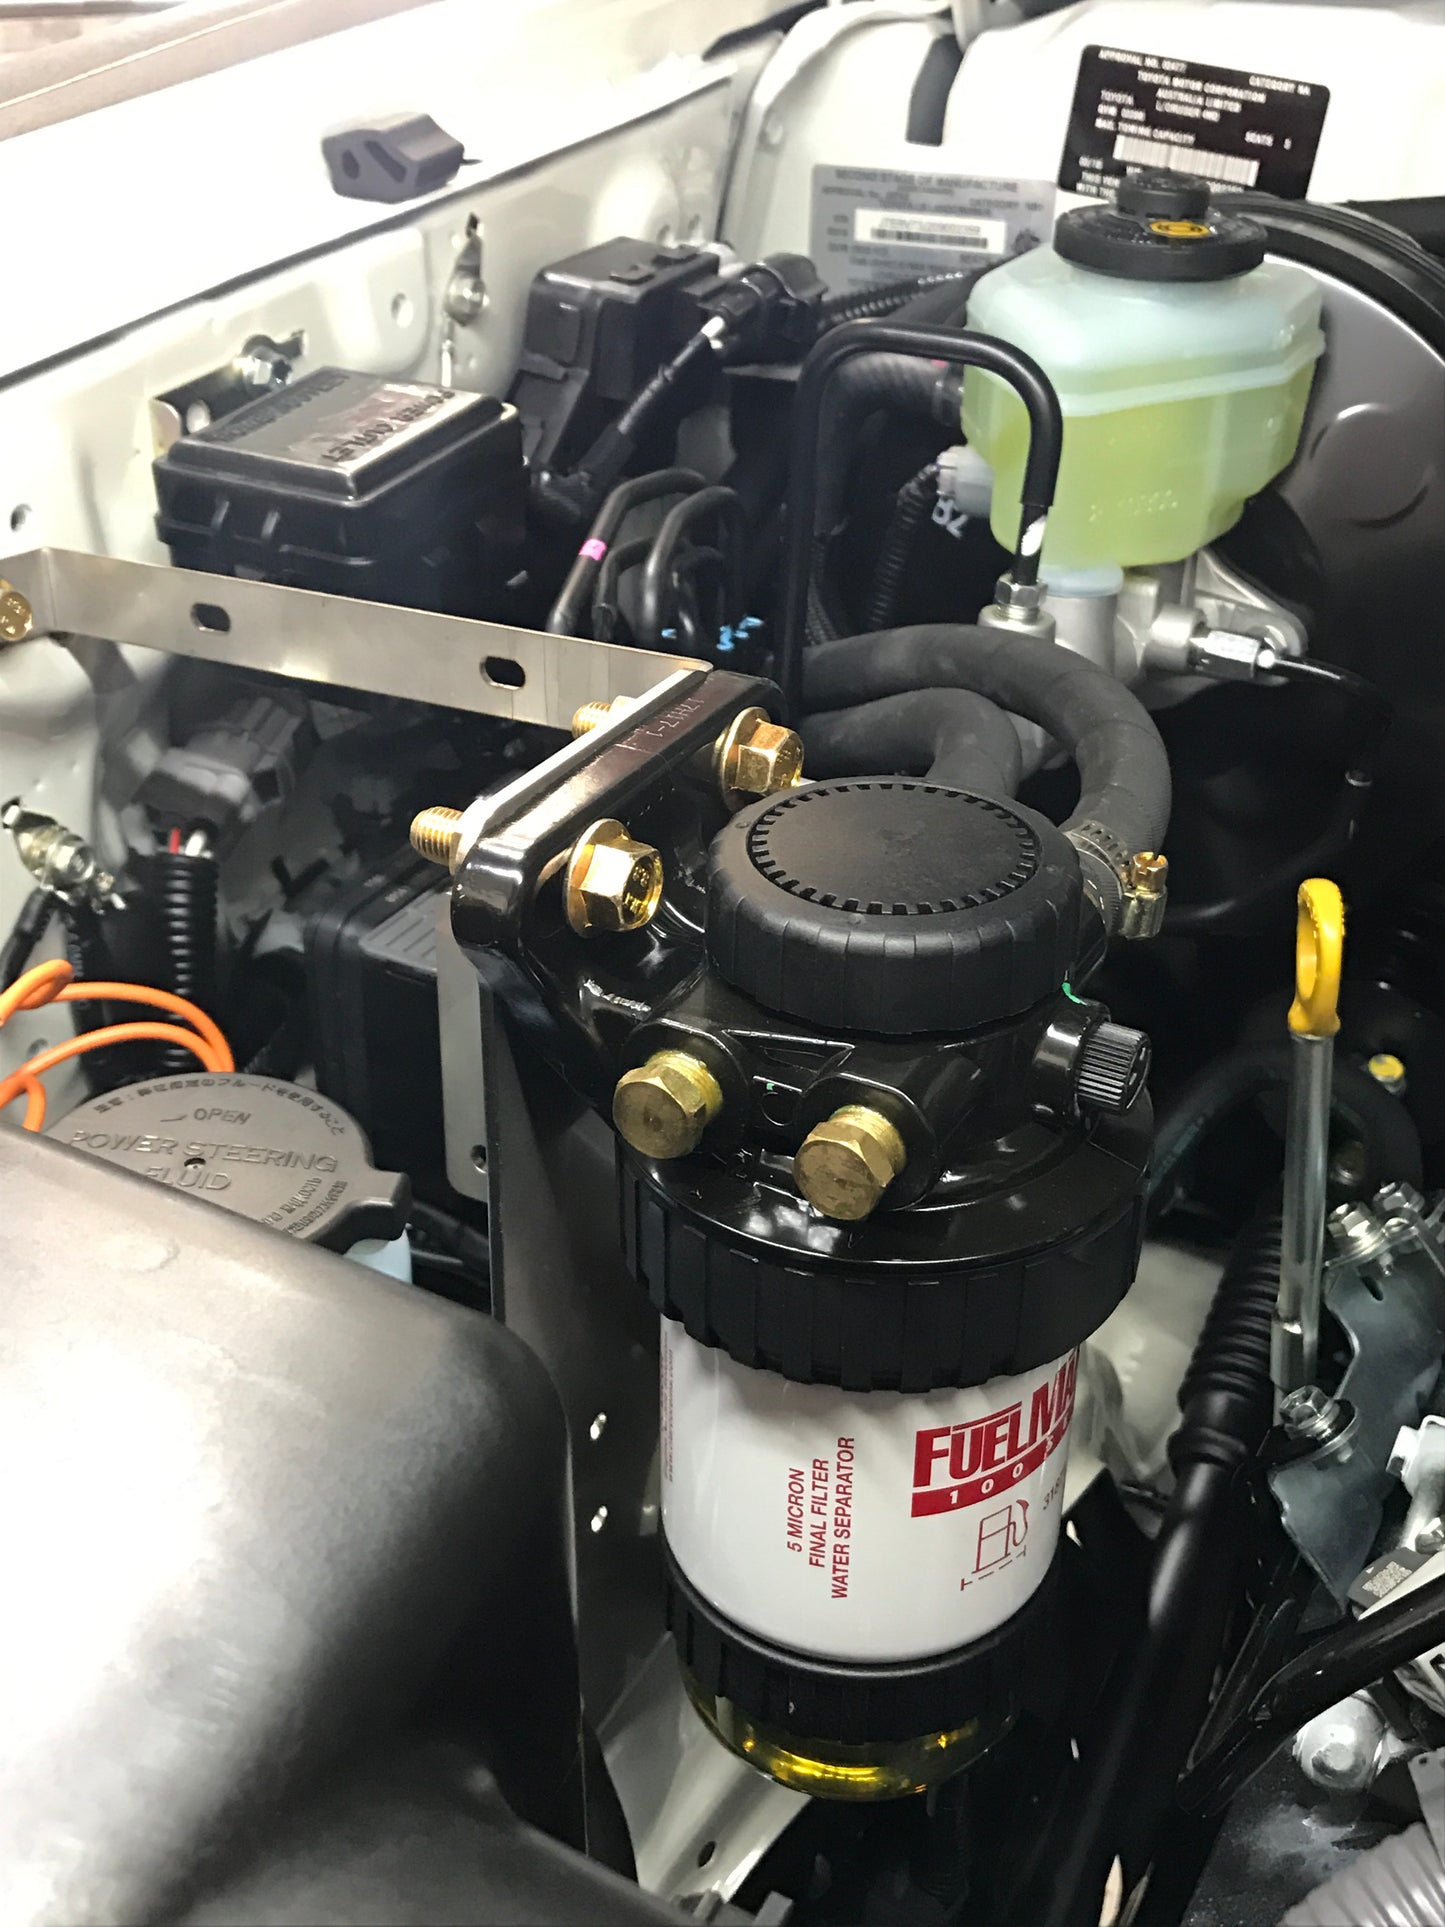 PDP Diesel Fuel Filtration Kit | V8 70 Series | Suits 07 - Current Models